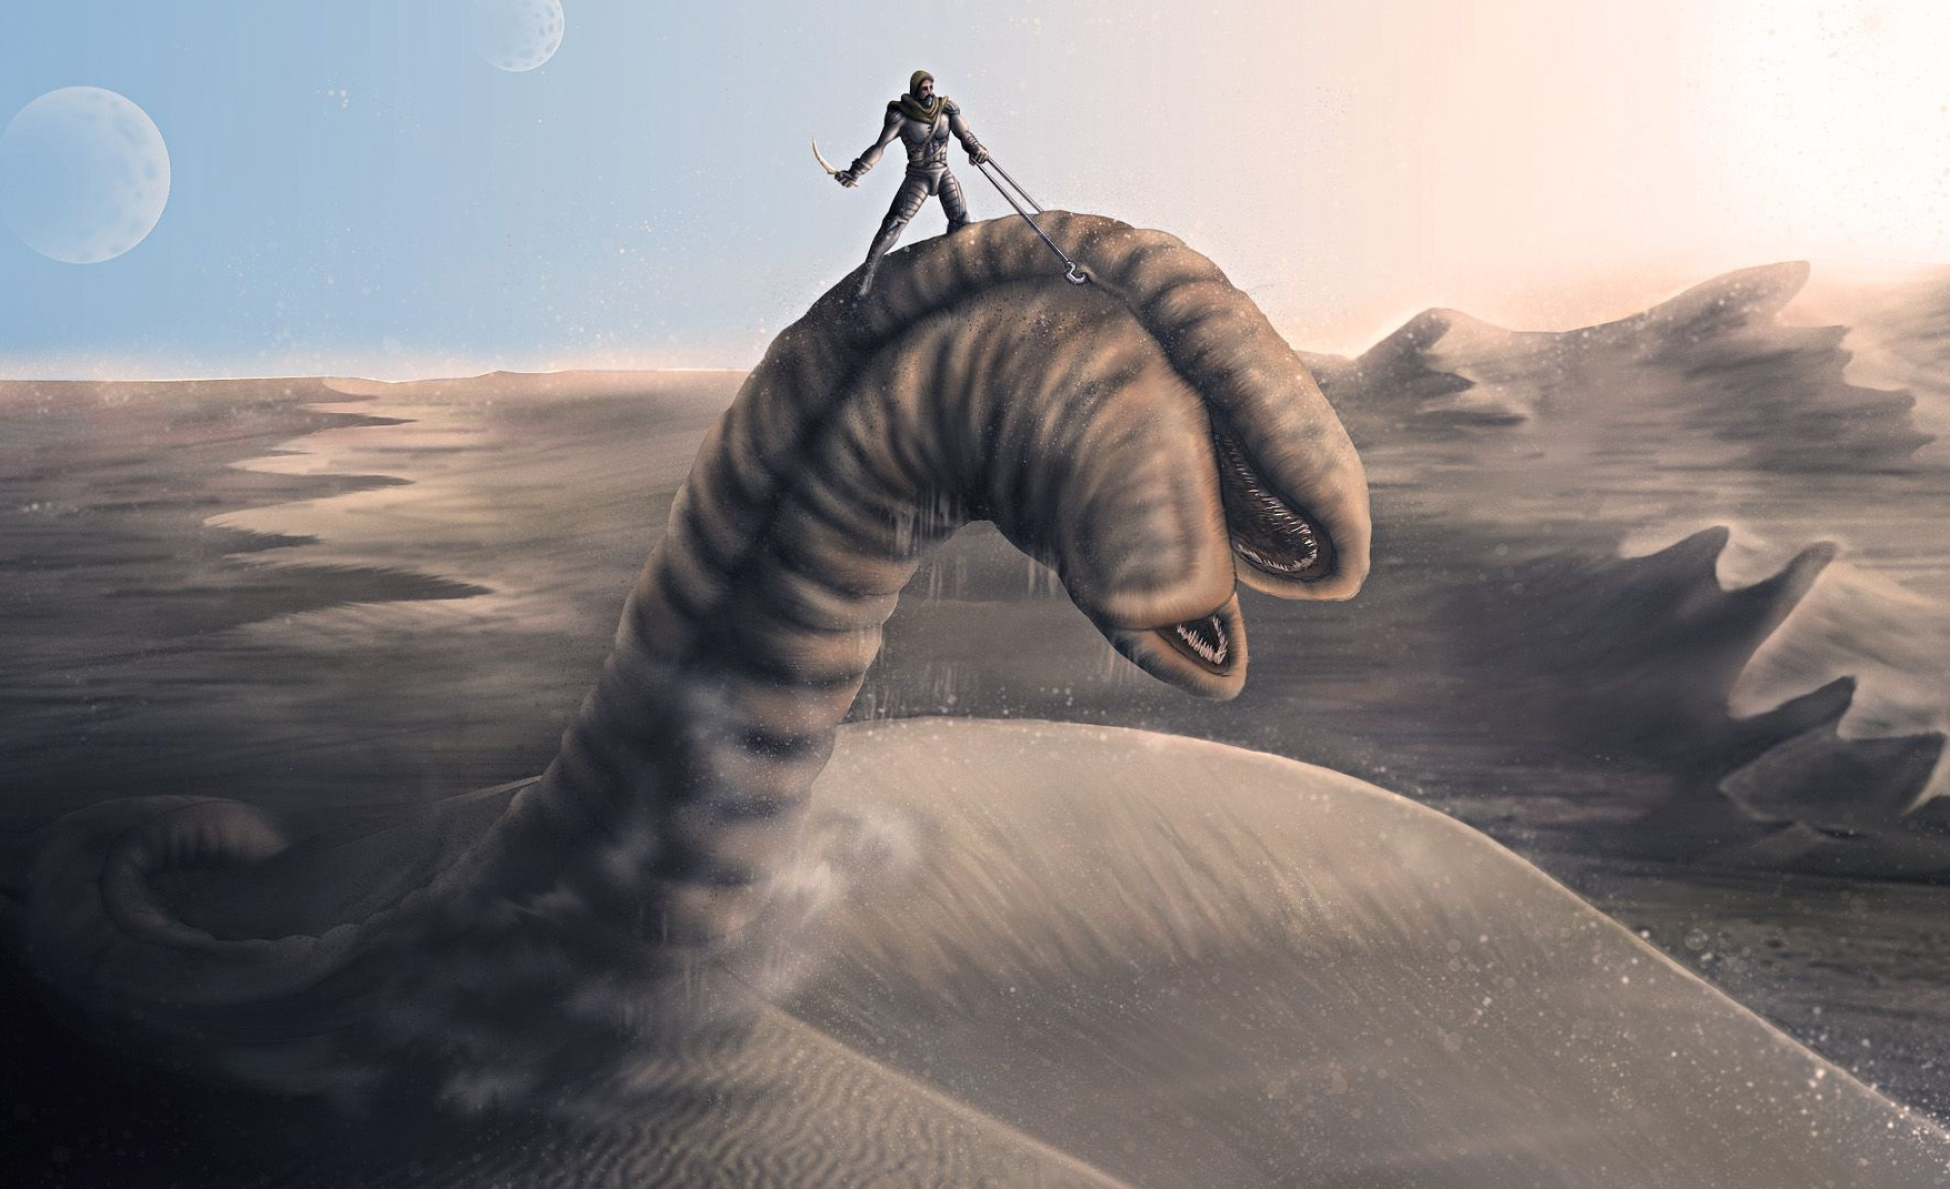 Dune worm, Dune series, Sandworm art, 1950x1190 HD Desktop